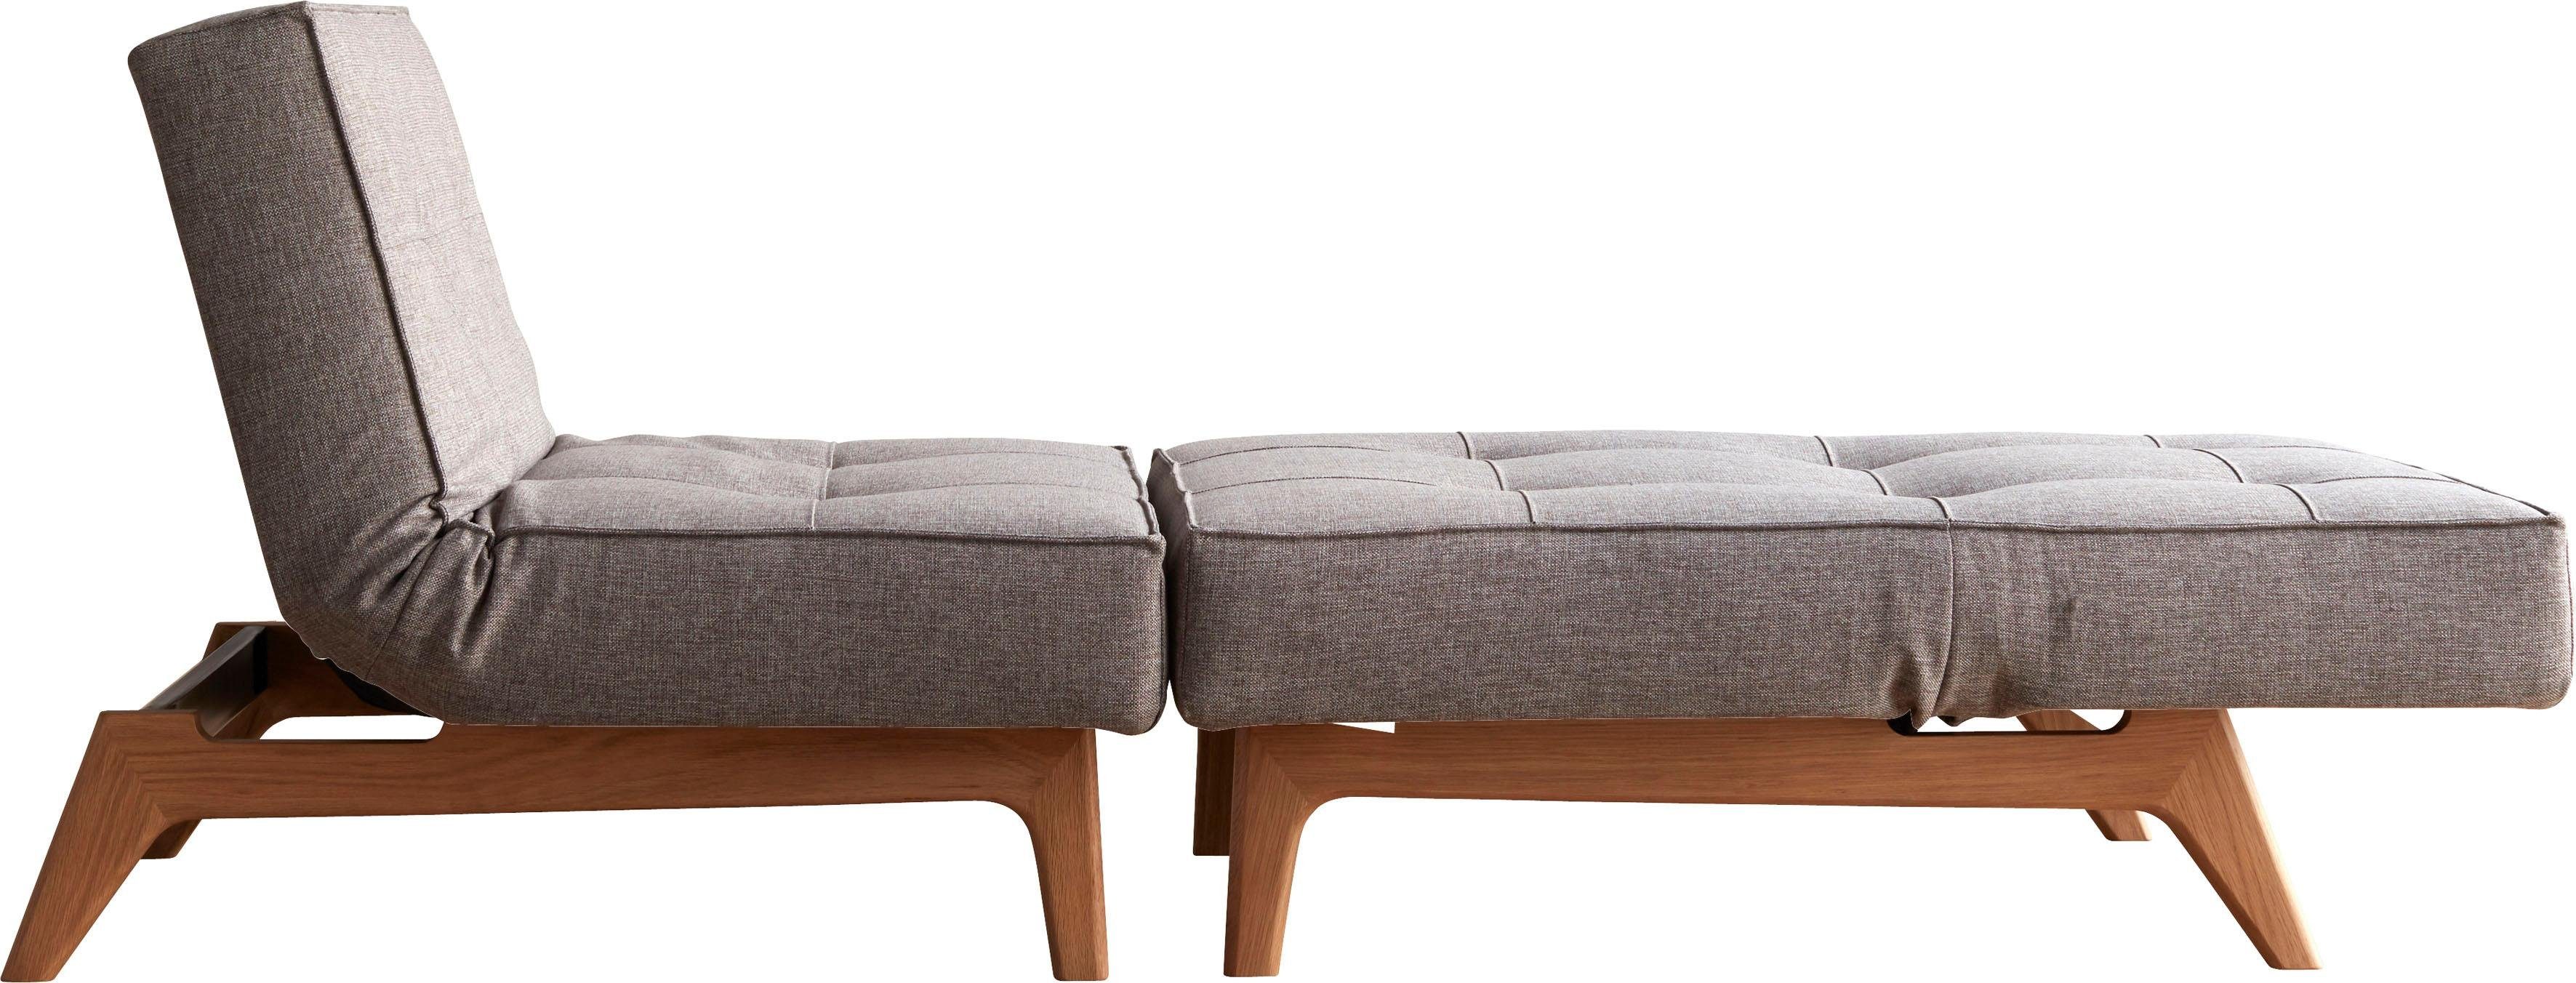 Design ™ INNOVATION Splitback, Eik Beine, LIVING skandinavischen mit Sessel grey in